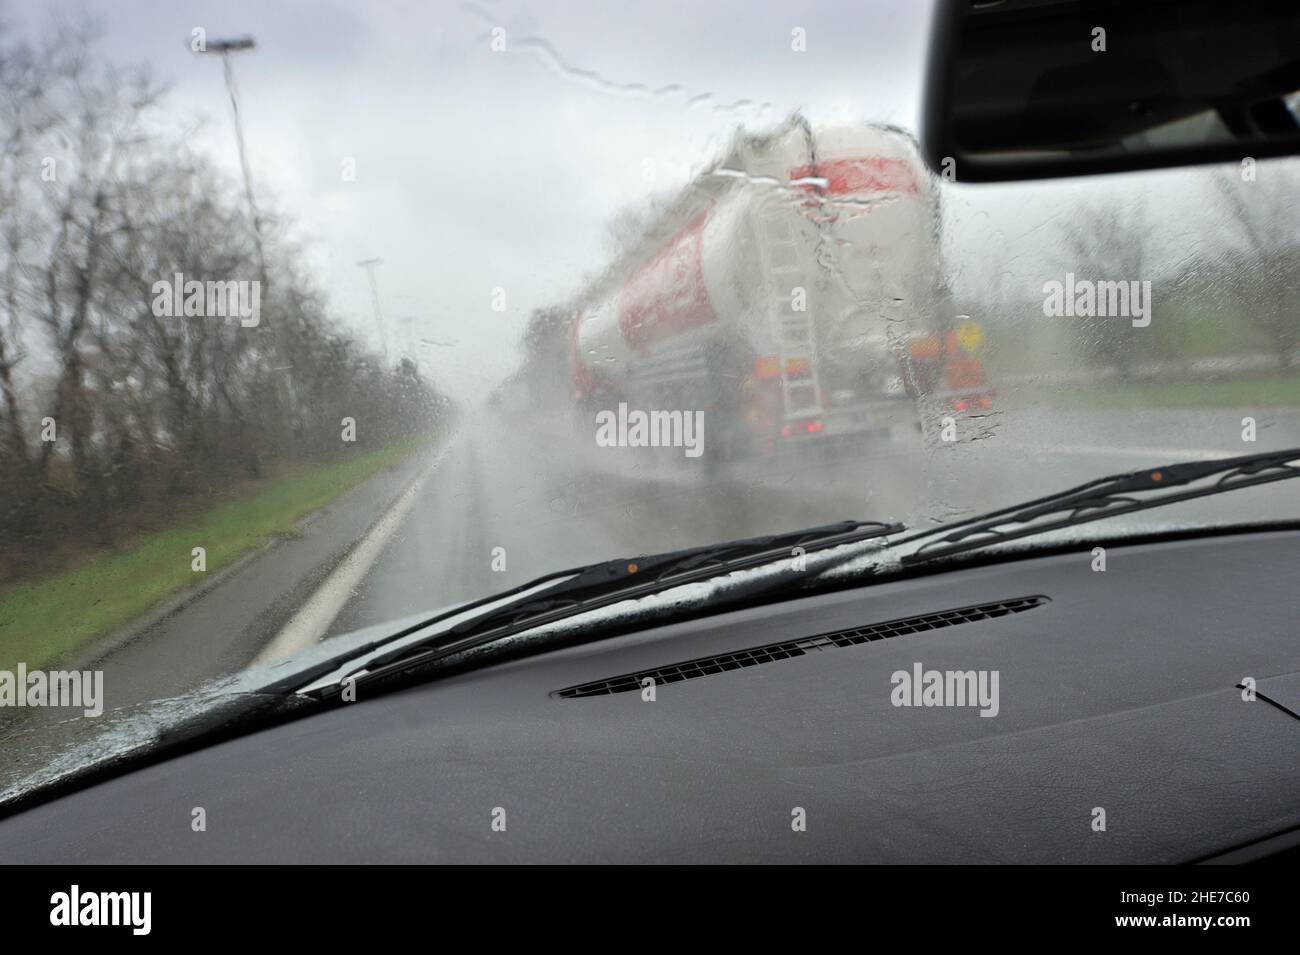 LKW wird auf der Autobahn überholt, regnerisches Wetter, schlechte Sicht | lorry infront on the motorway, rainy weather, poor visibility, miserable si Stock Photo